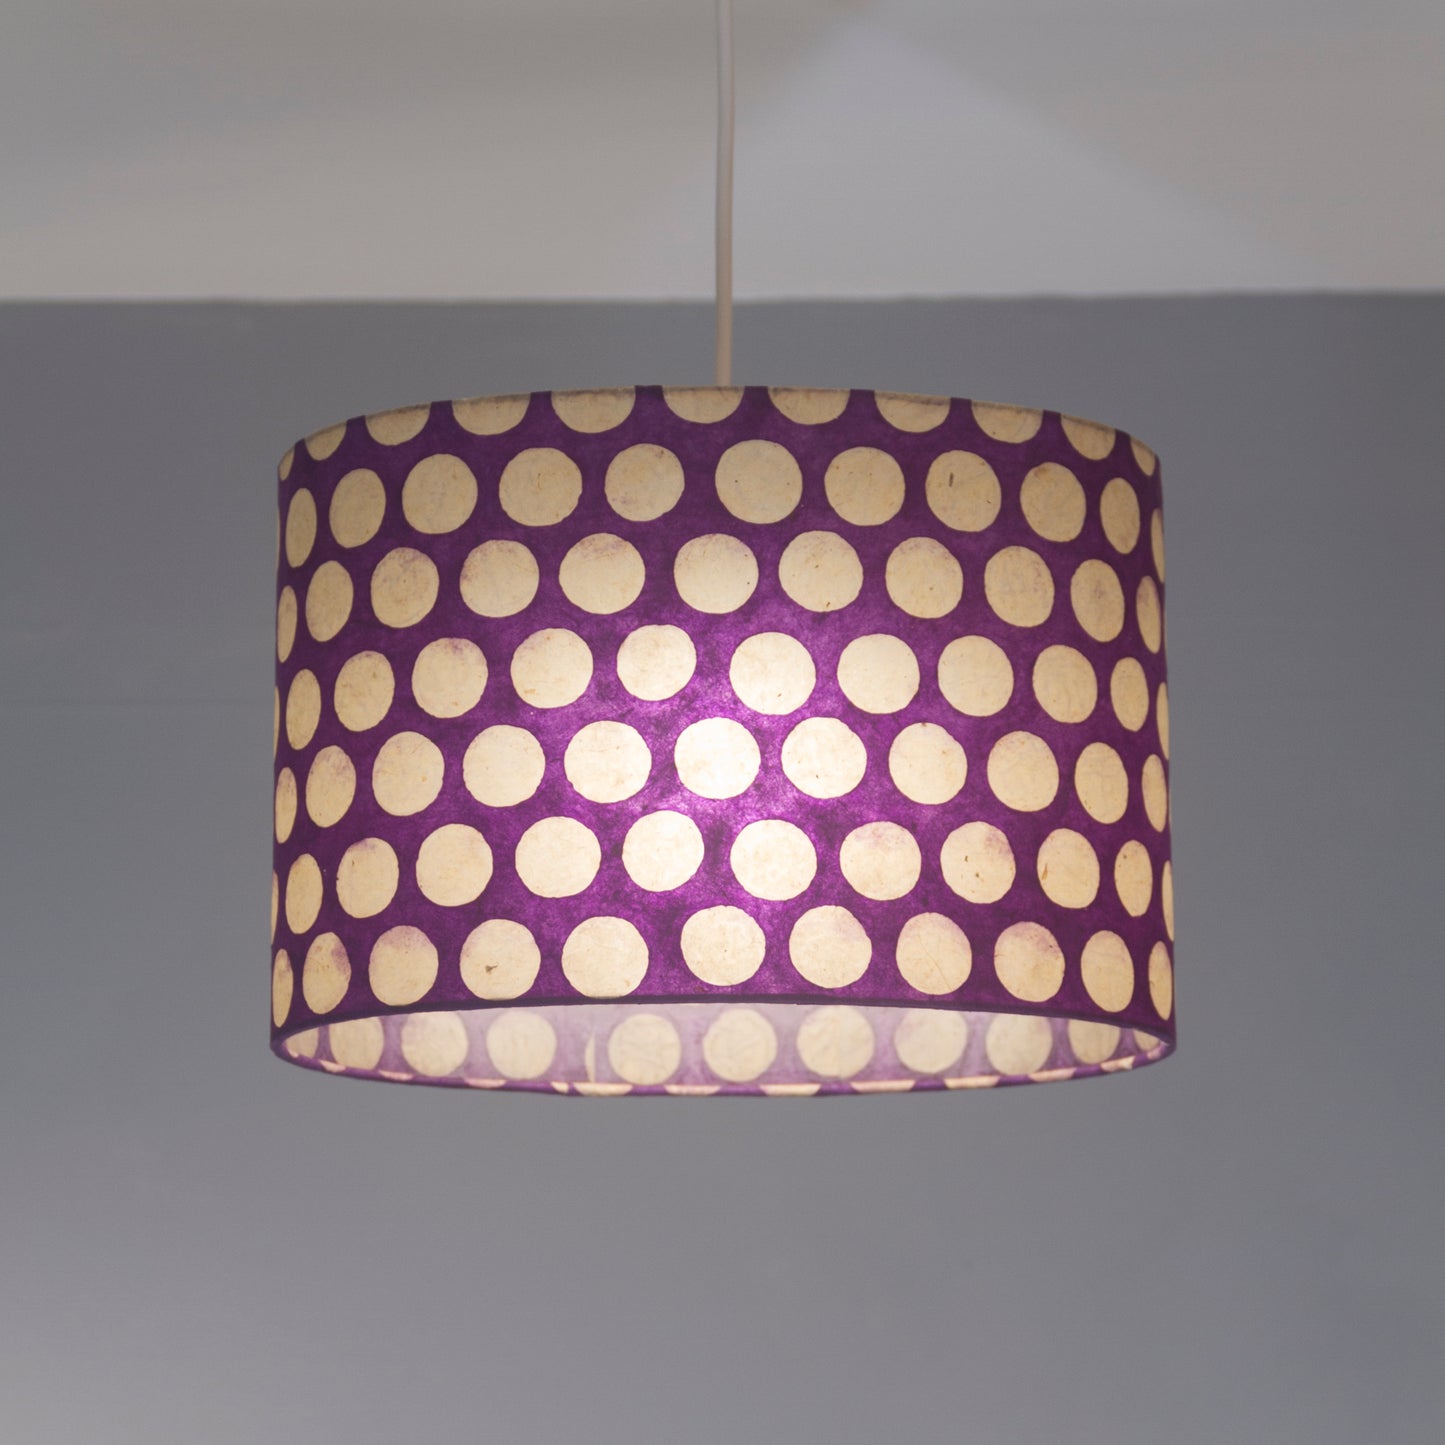 Square Lamp Shade - P79 - Batik Dots Purple, 40cm(w) x 20cm(h) x 40cm(d)